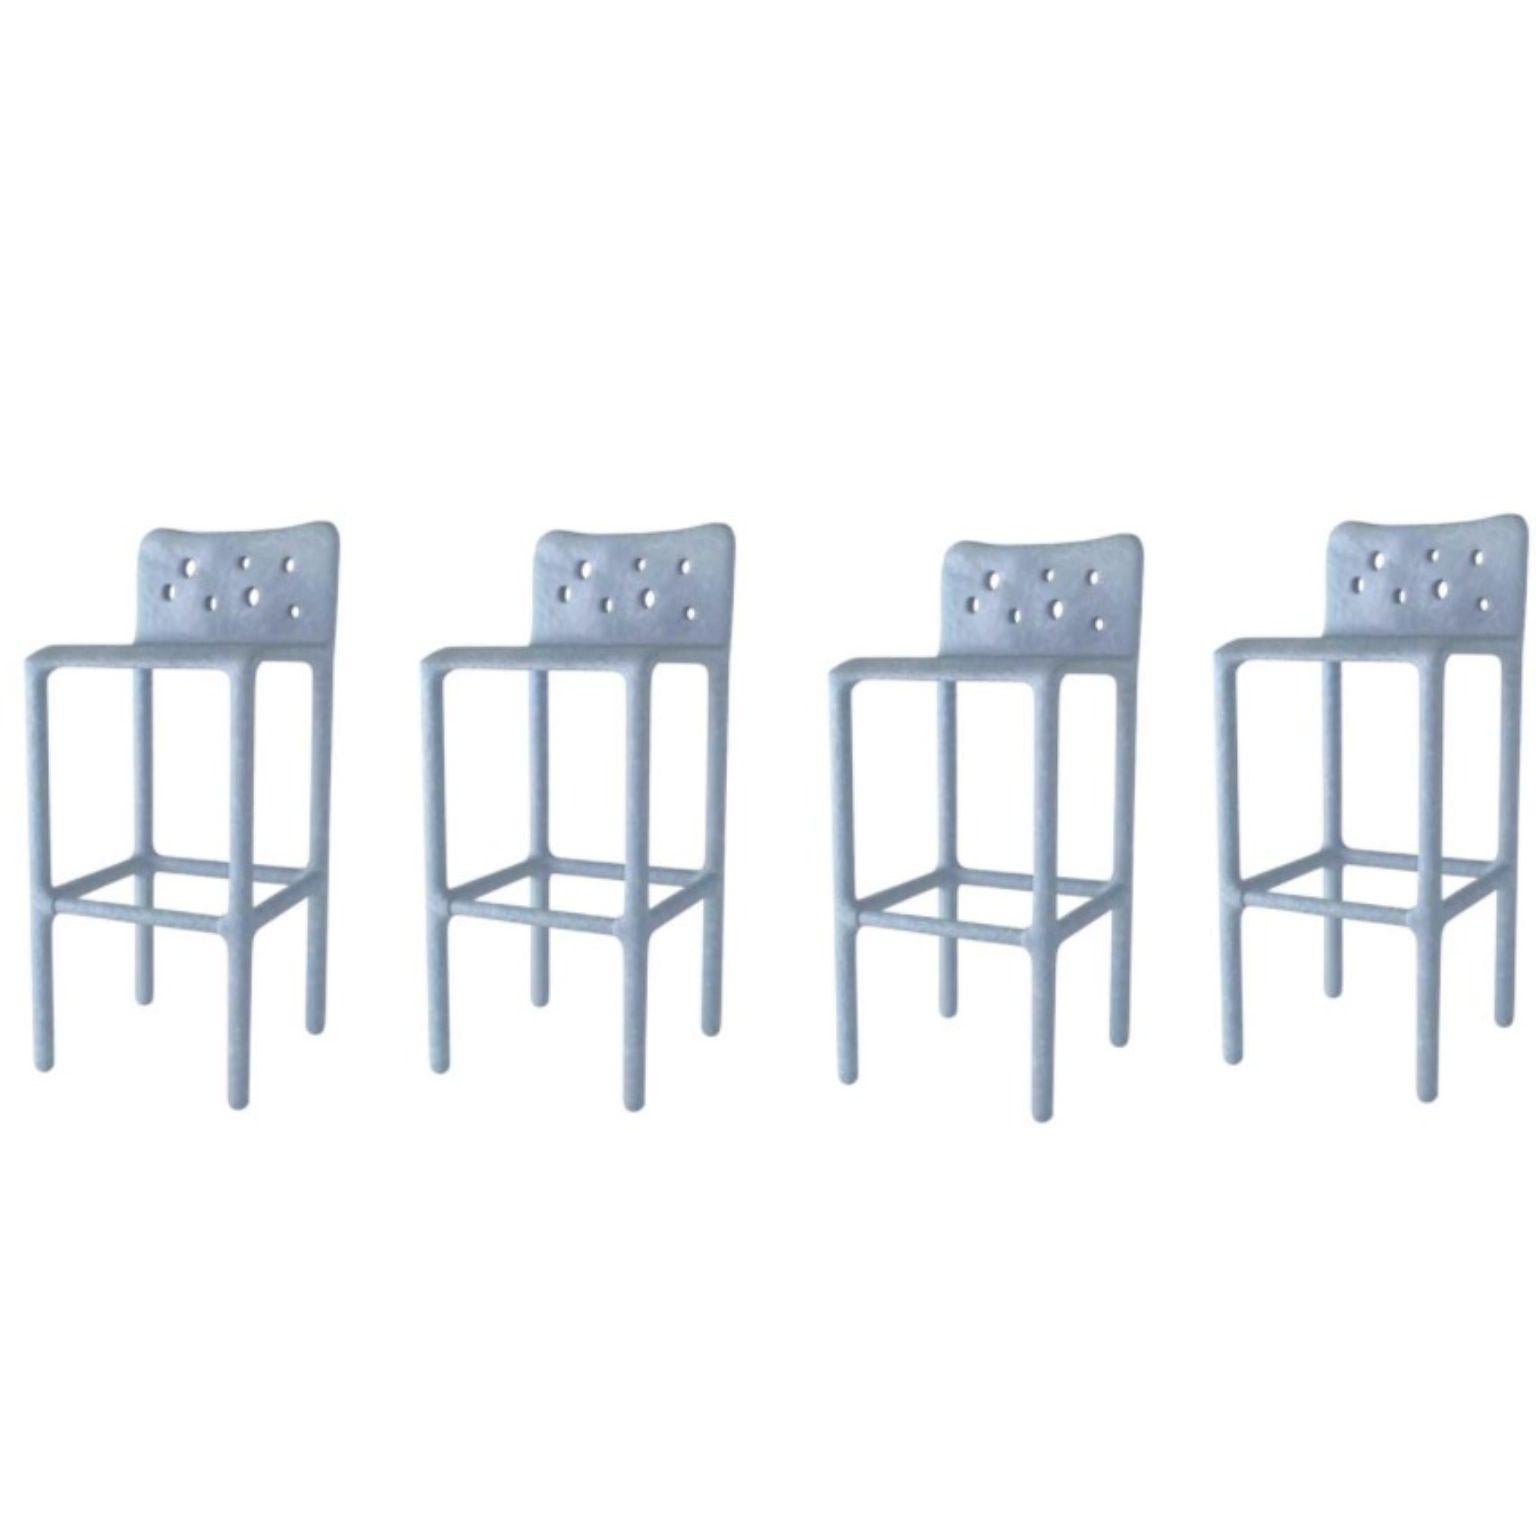 Ensemble de 4 chaises contemporaines sculptées bleu ciel par FAINA
Design : Victoriya Yakusha
MATERIAL : acier, caoutchouc de lin, biopolymère, cellulose.
Dimensions : Hauteur 106 x largeur 45 x largeur de la place assise 49 Hauteur des pieds : 80